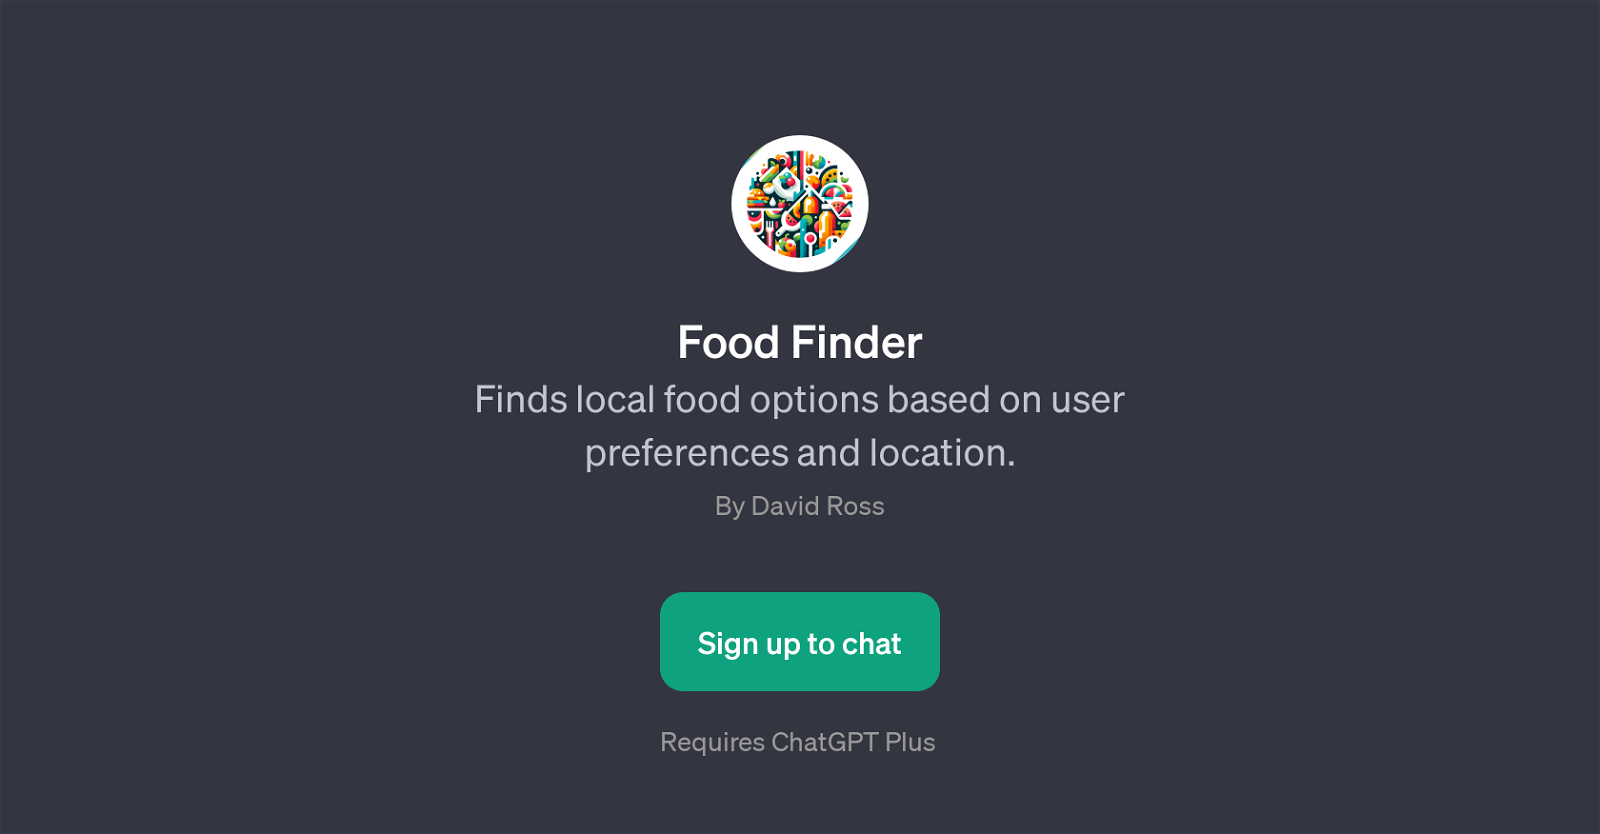 Food Finder website